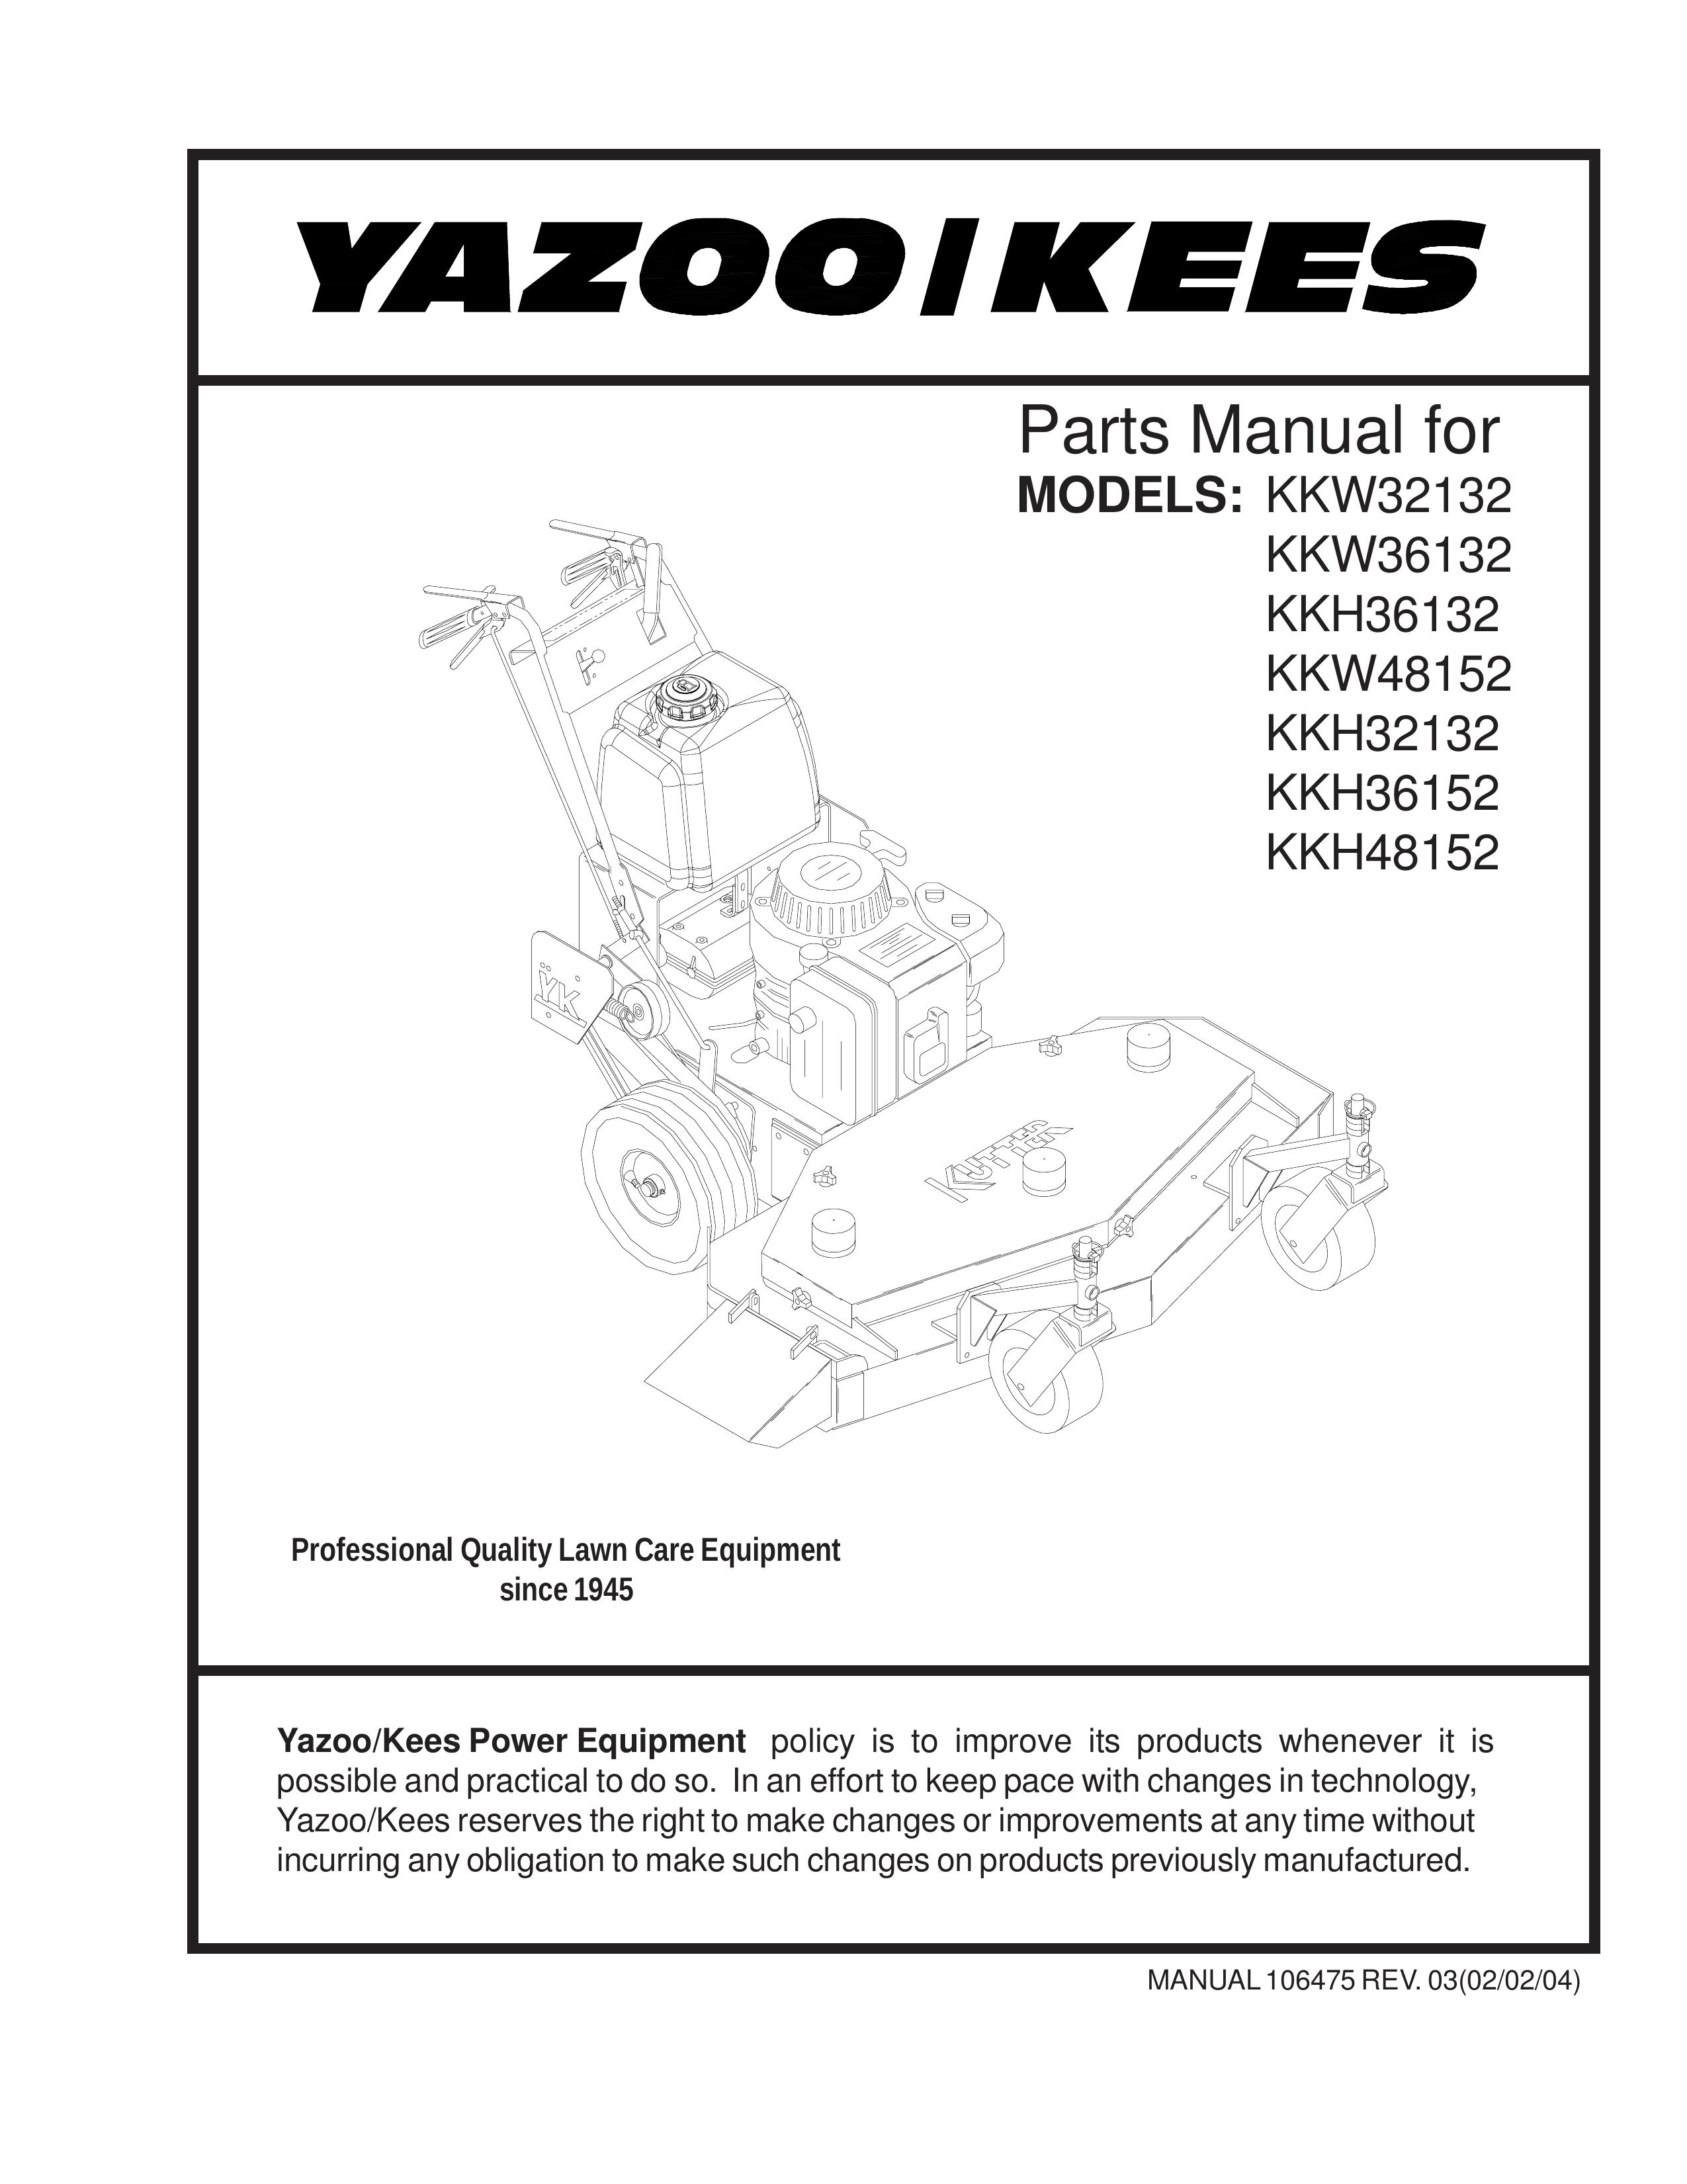 Yazoo/Kees KKH36152 Lawn Mower User Manual